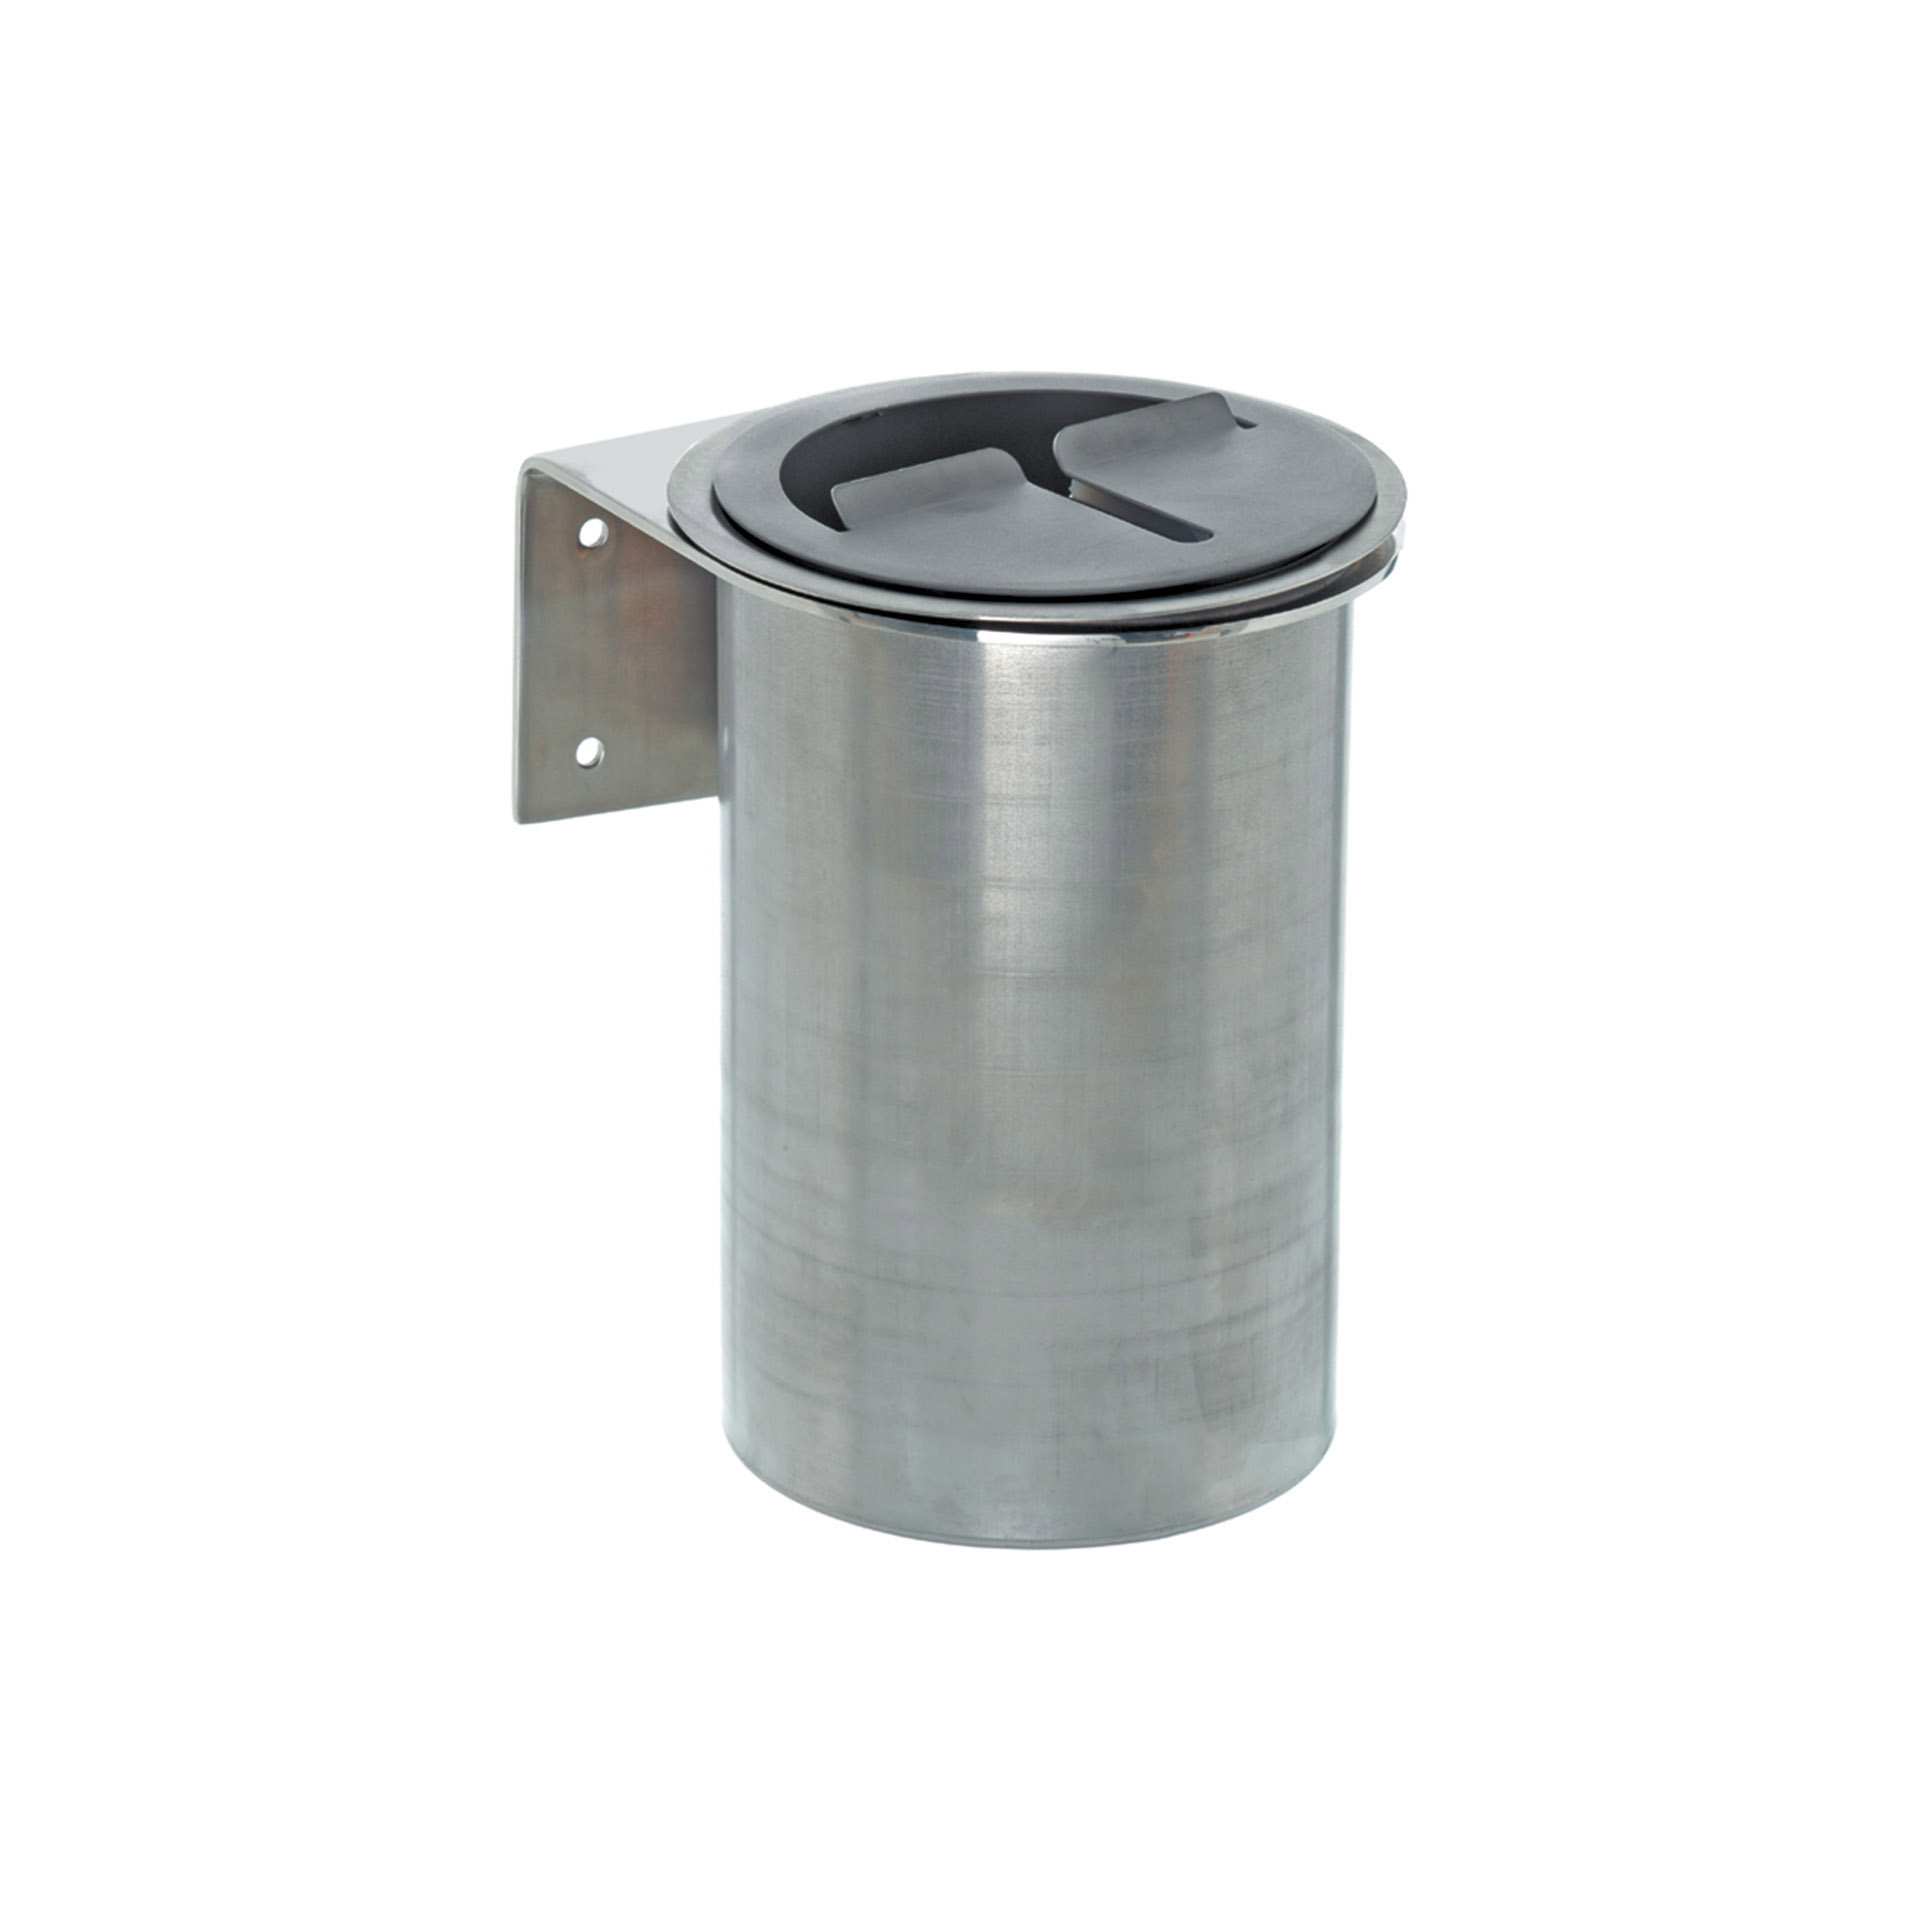 Messer-Abstreifbehälter - mit Schlitzdeckel - Abm. 14,0 x 14,0 x 19,0 cm - Edelstahl - 270004-C